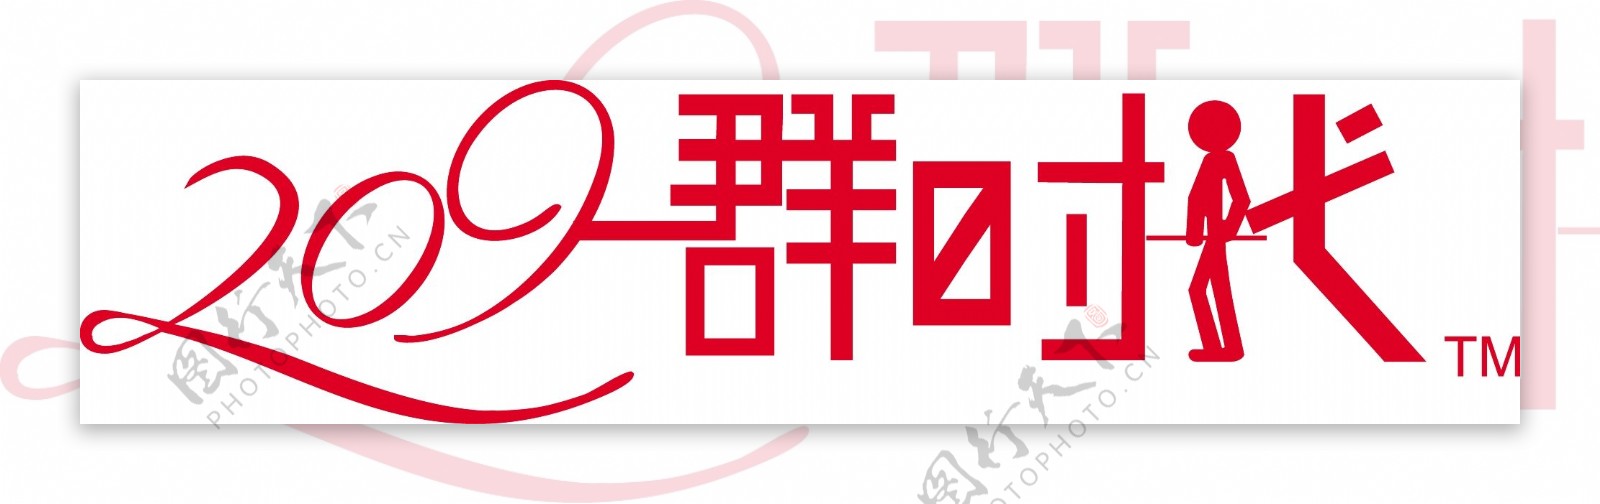 台球logo图片